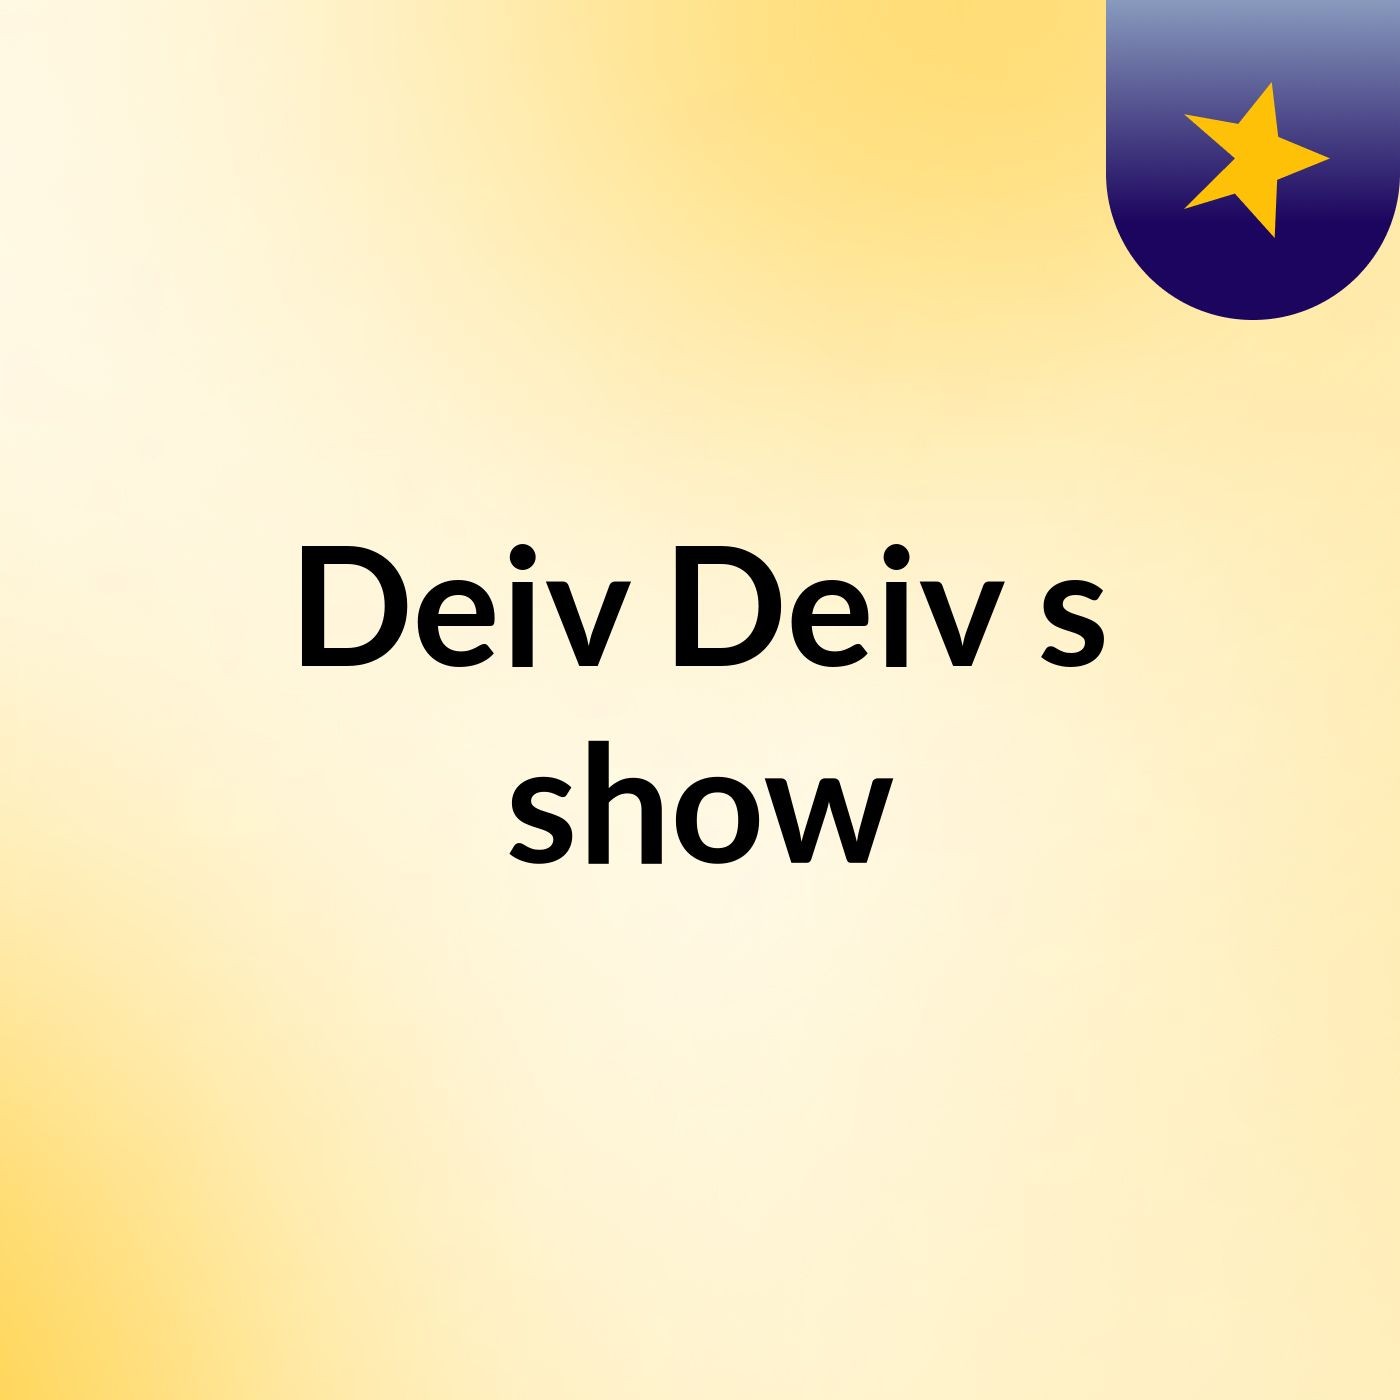 Deiv Deiv's show